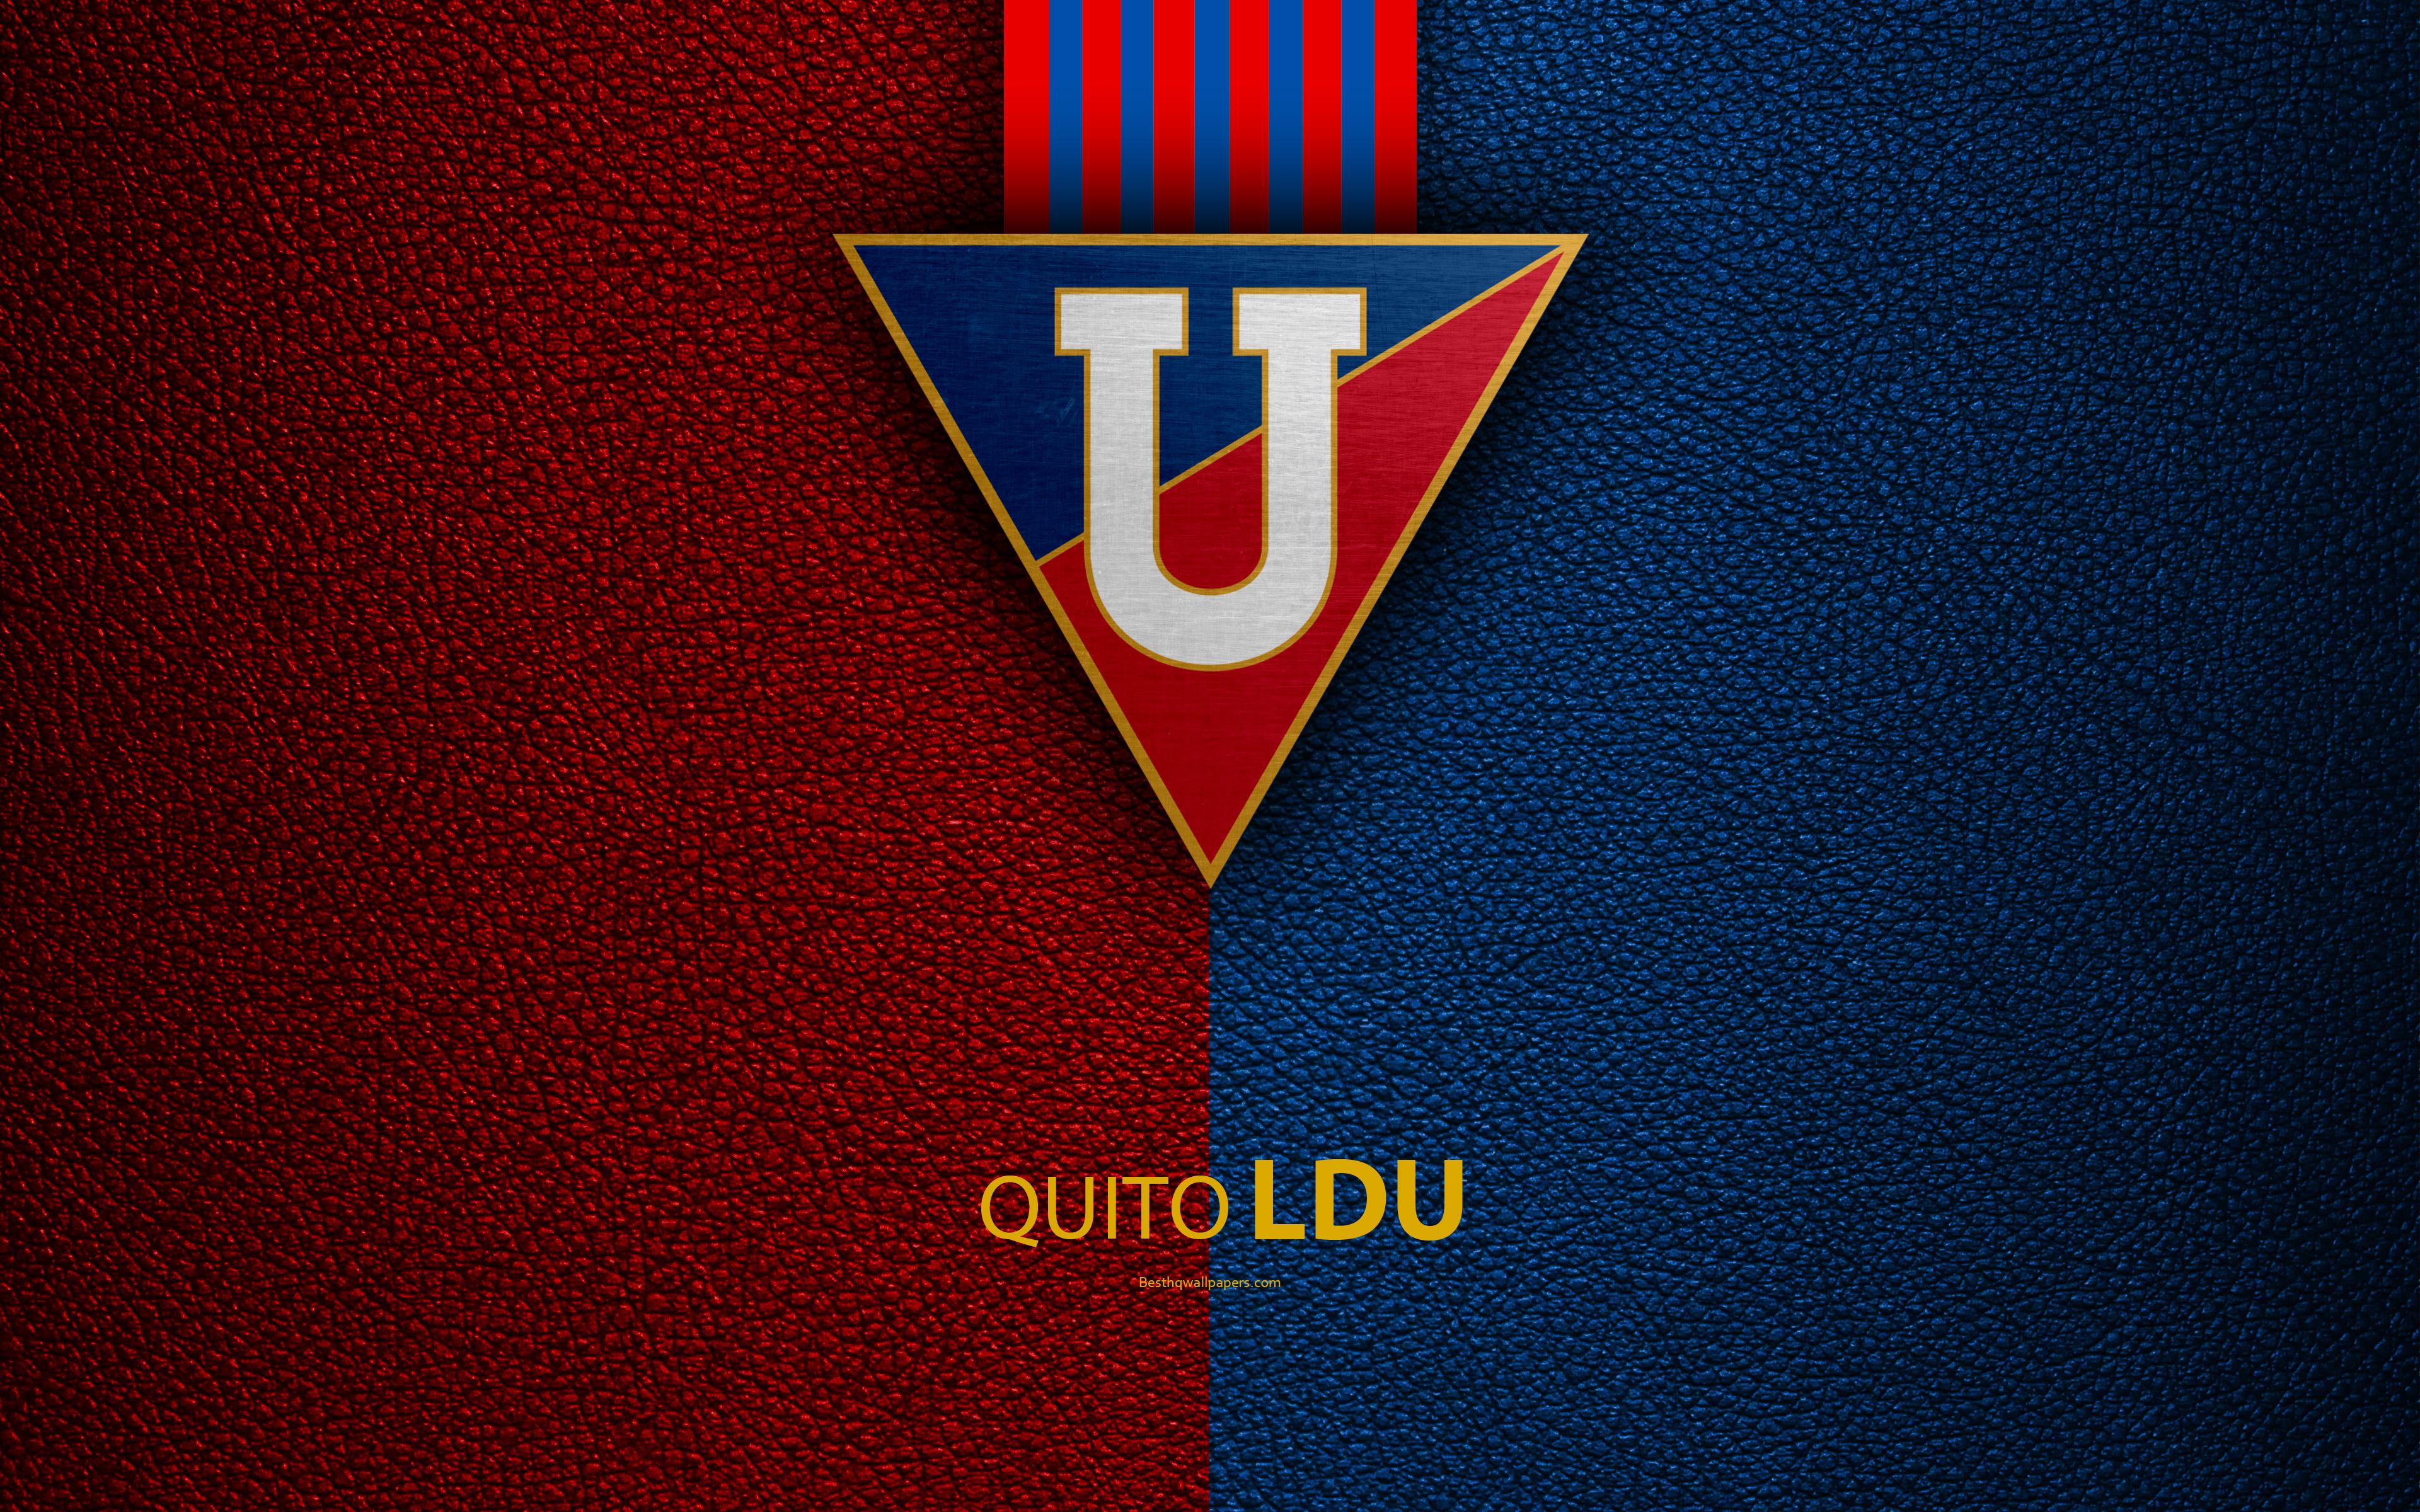 Download wallpaper LDU Quito, Liga Deportiva Universitaria de Quito